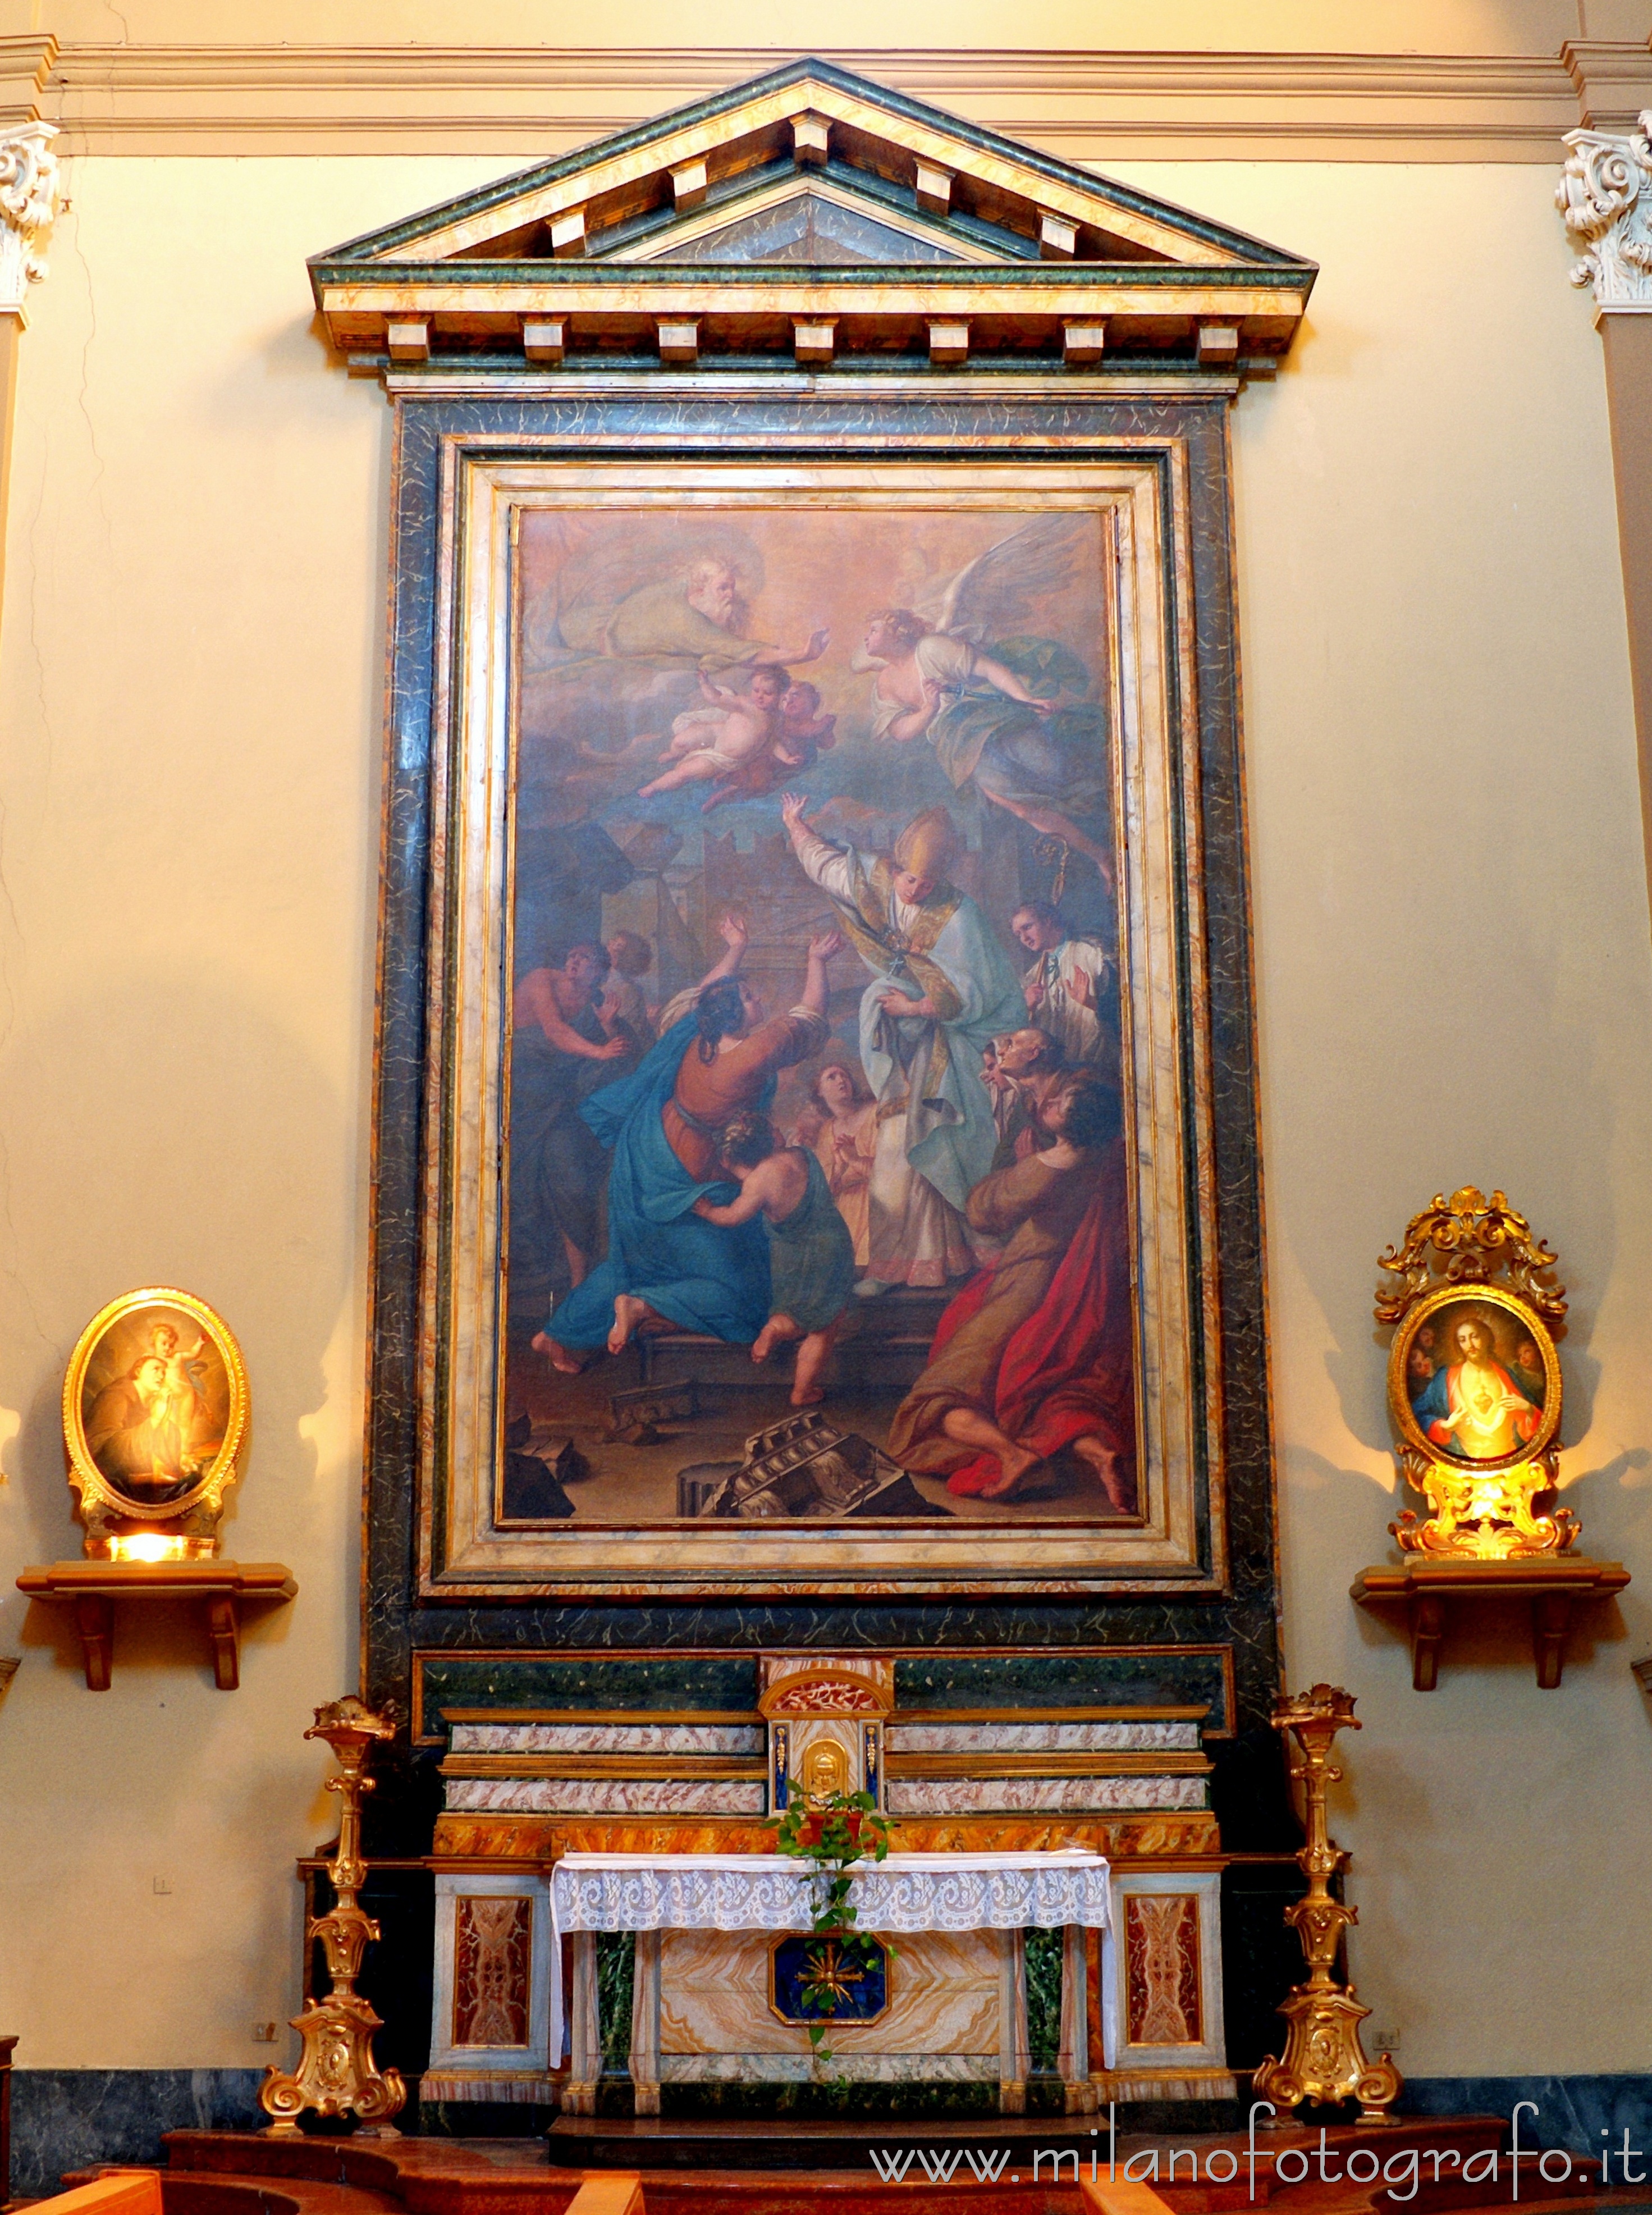 Rimini: Altare di Sant'Emidio nella Chiesa di San Francesco Saverio, detta anche Chiesa del Suffragio - Rimini